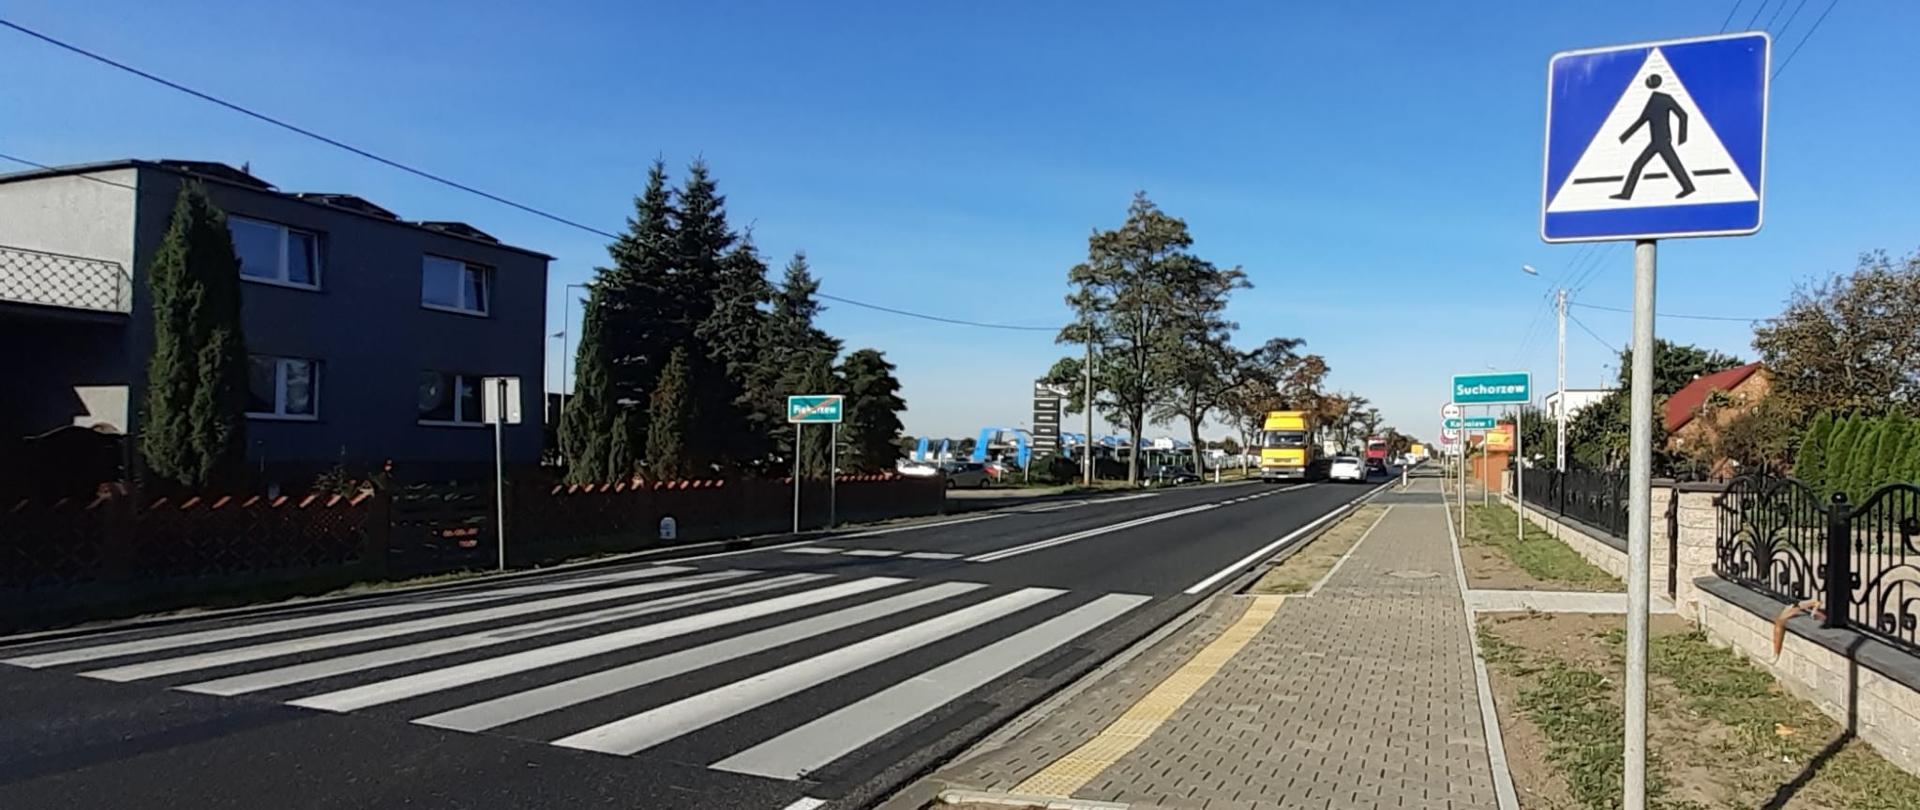 Zdjęcie przedstawia drogę krajową nr 11 w miejscowości Piekarzew. Na zdjęciu widoczna droga, po jednym pasie w każdym kierunku. Z prawej strony chodnik wraz z przejściem dla pieszych. W oddali widoczne samochody.